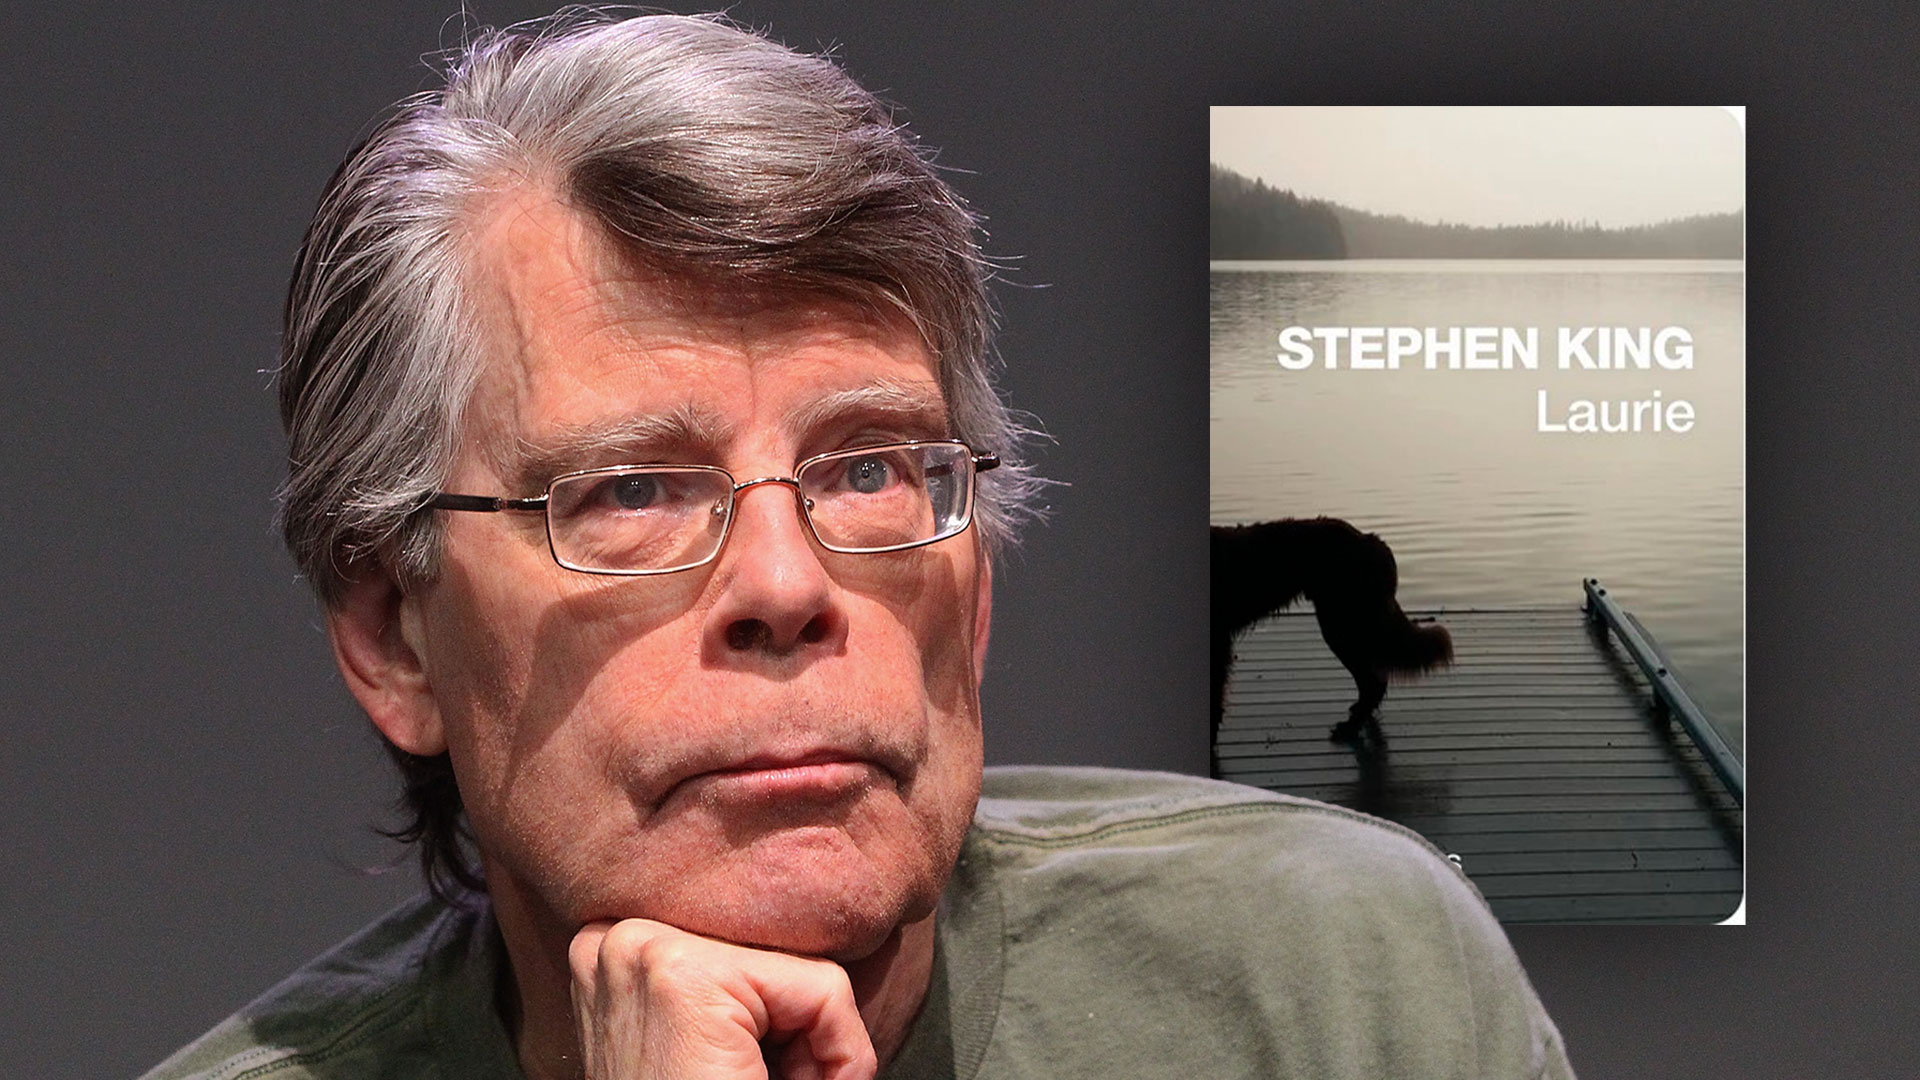 Stephen King, gratis: cómo es “Laurie”, el ebook del maestro del terror que se baja libremente